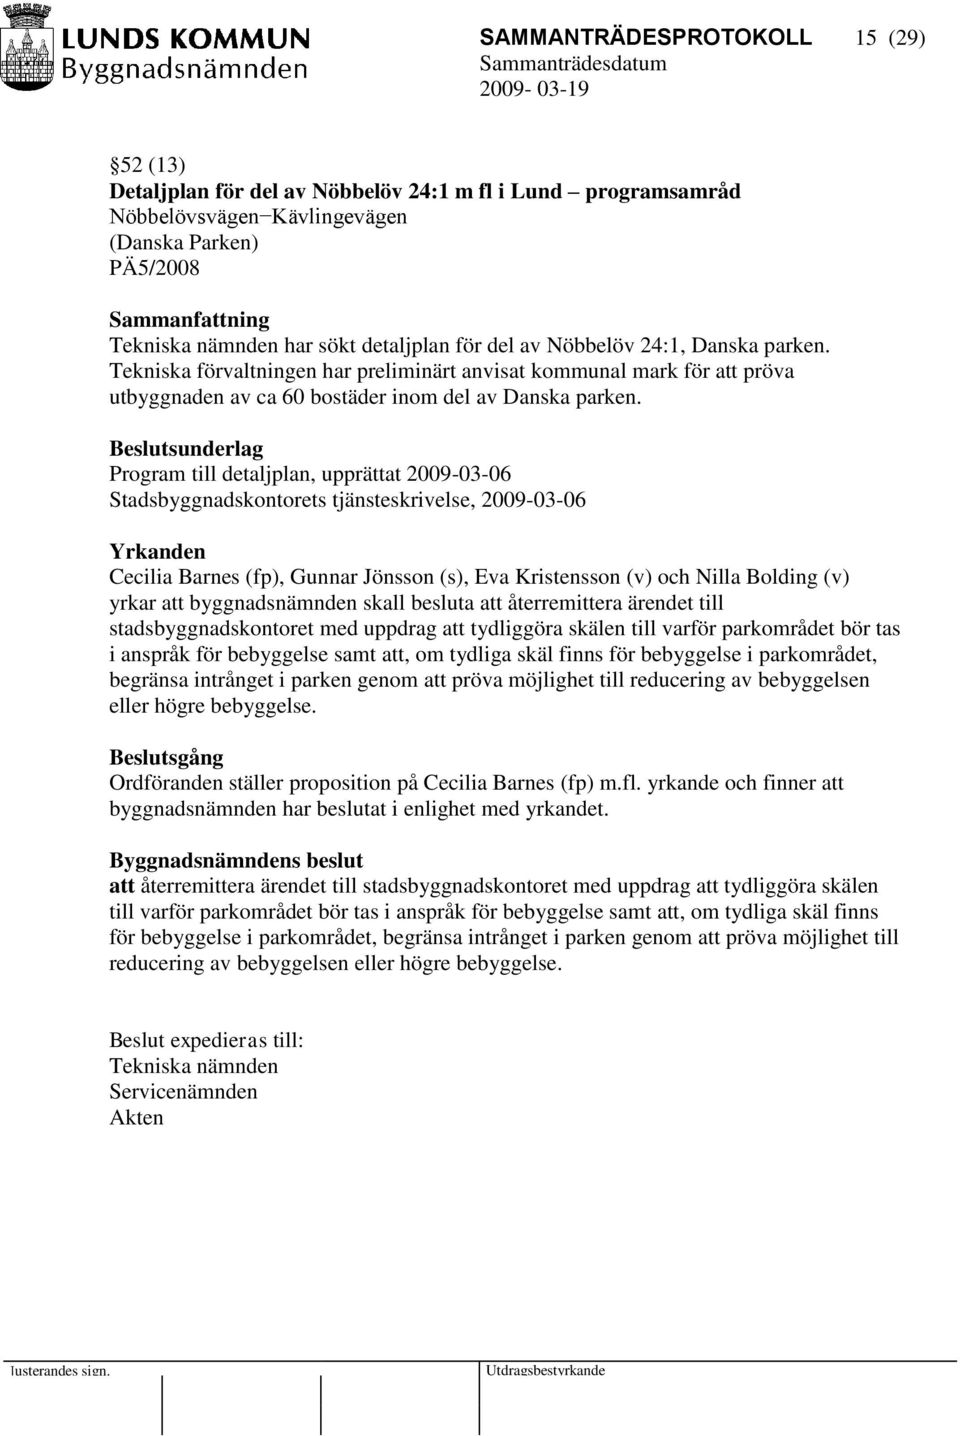 Program till detaljplan, upprättat 2009-03-06 Stadsbyggnadskontorets tjänsteskrivelse, 2009-03-06 Yrkanden Cecilia Barnes (fp), Gunnar Jönsson (s), Eva Kristensson (v) och Nilla Bolding (v) yrkar att